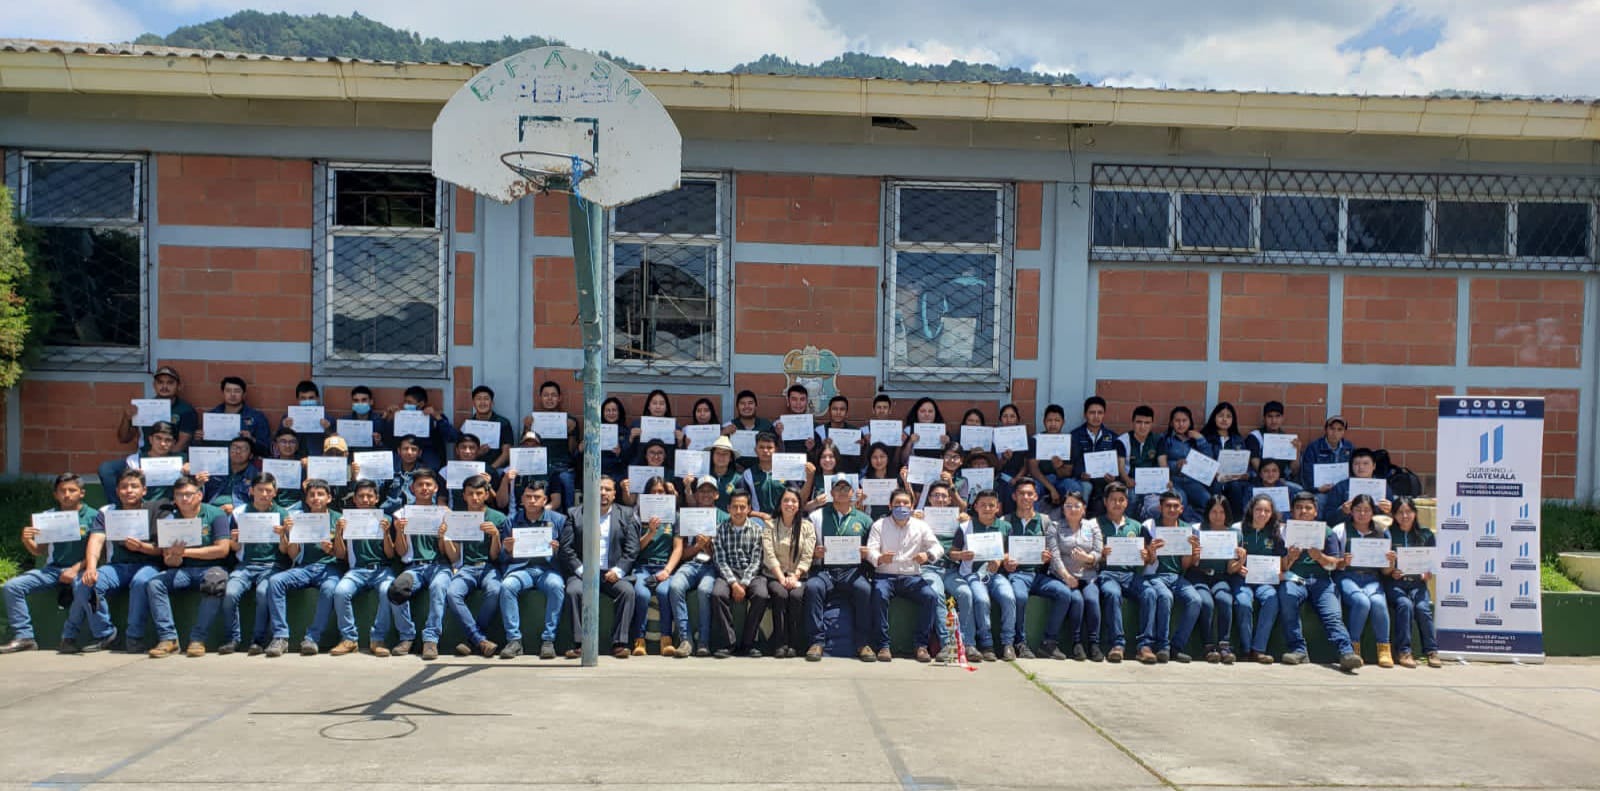 Estudiantes de San Marcos son líderes ambientales de Guatemala